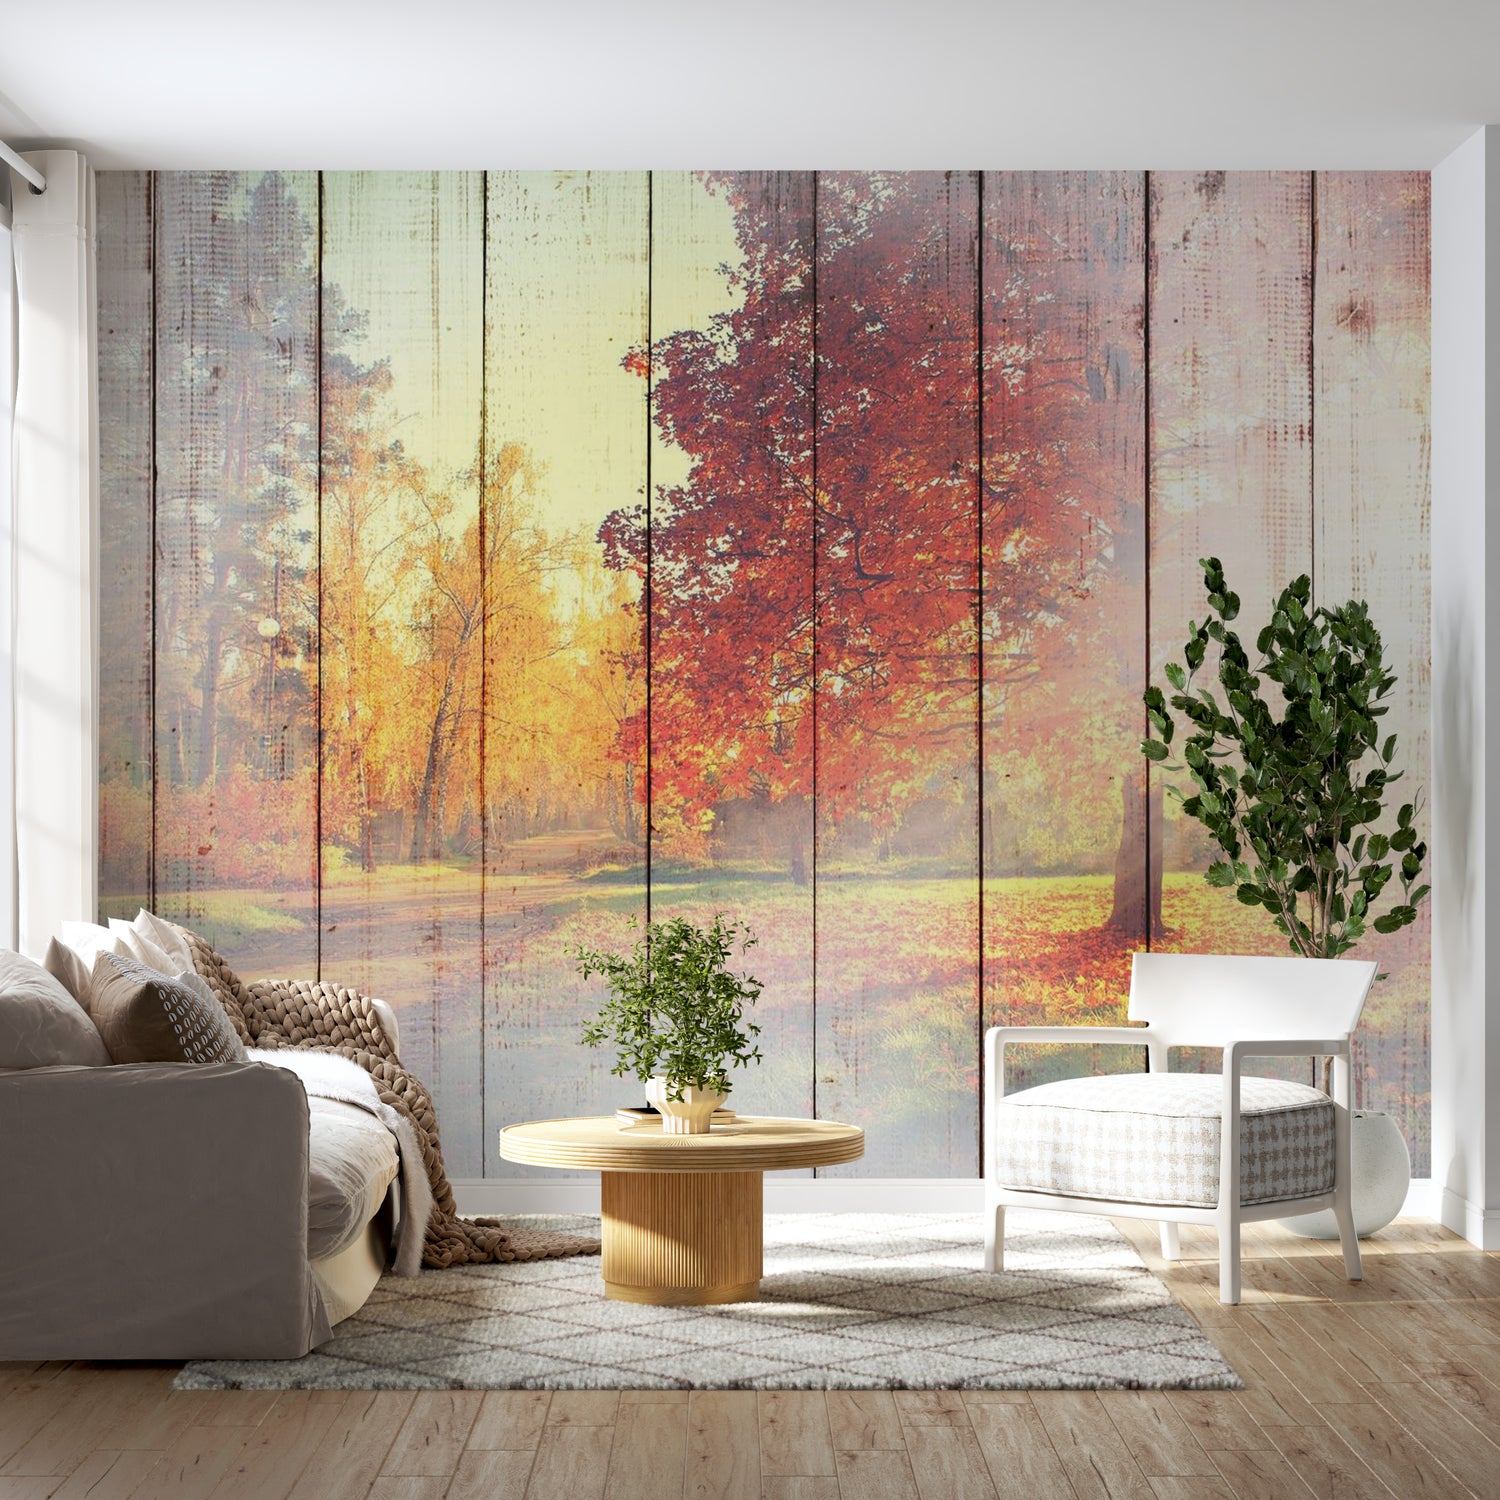 Landscape Wallpaper Wall Mural - Autumn Sun